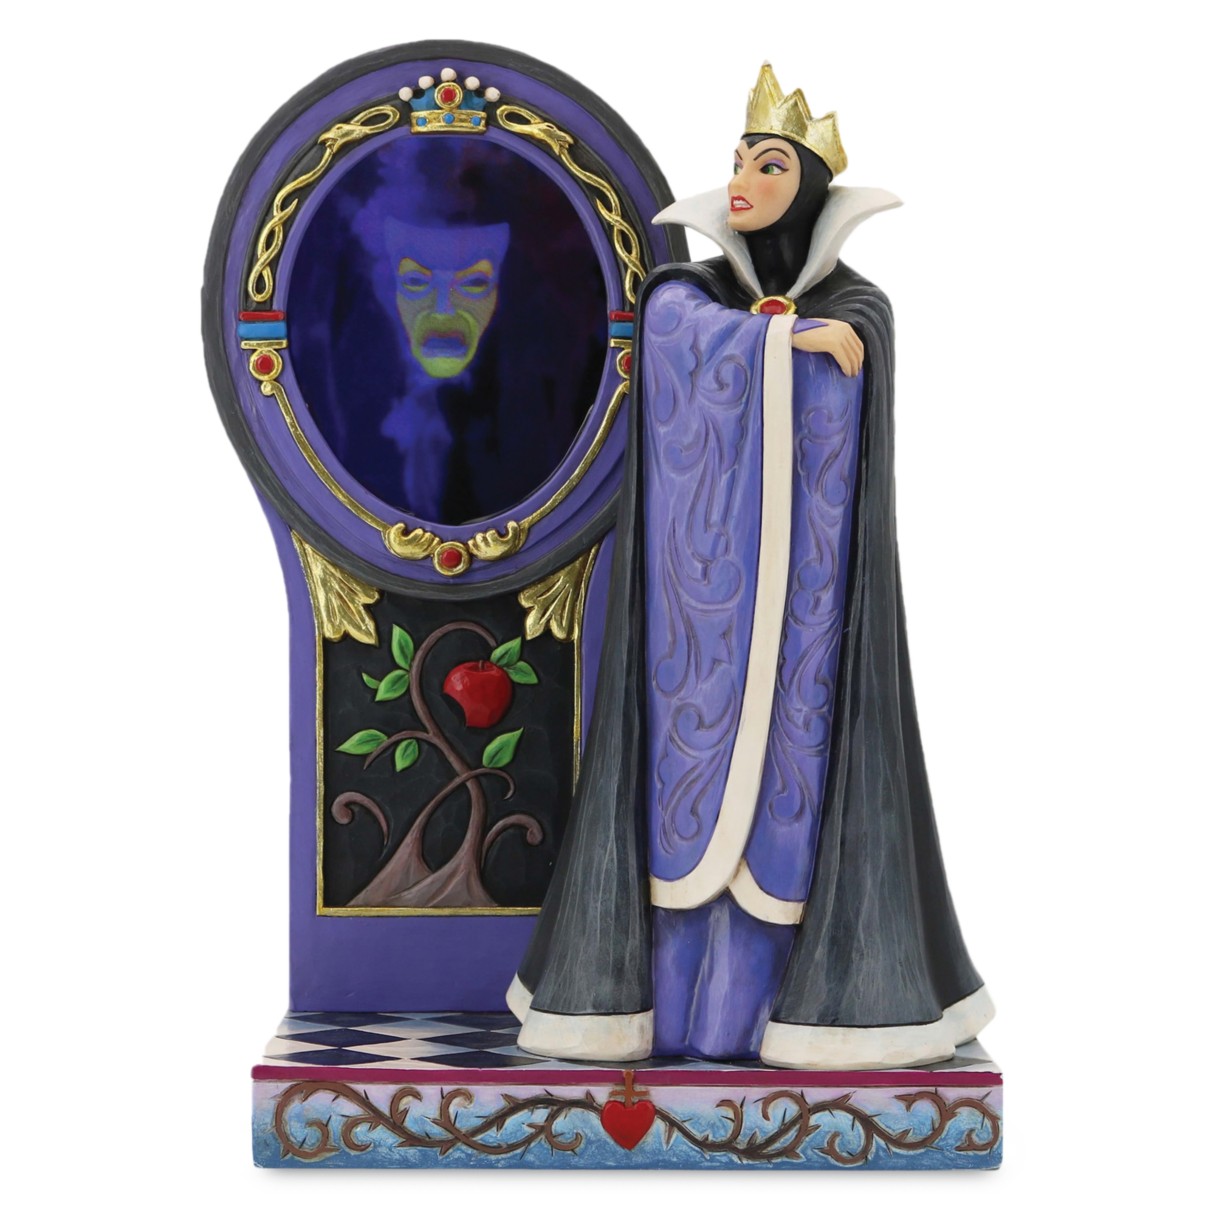 snow white magic mirror toy